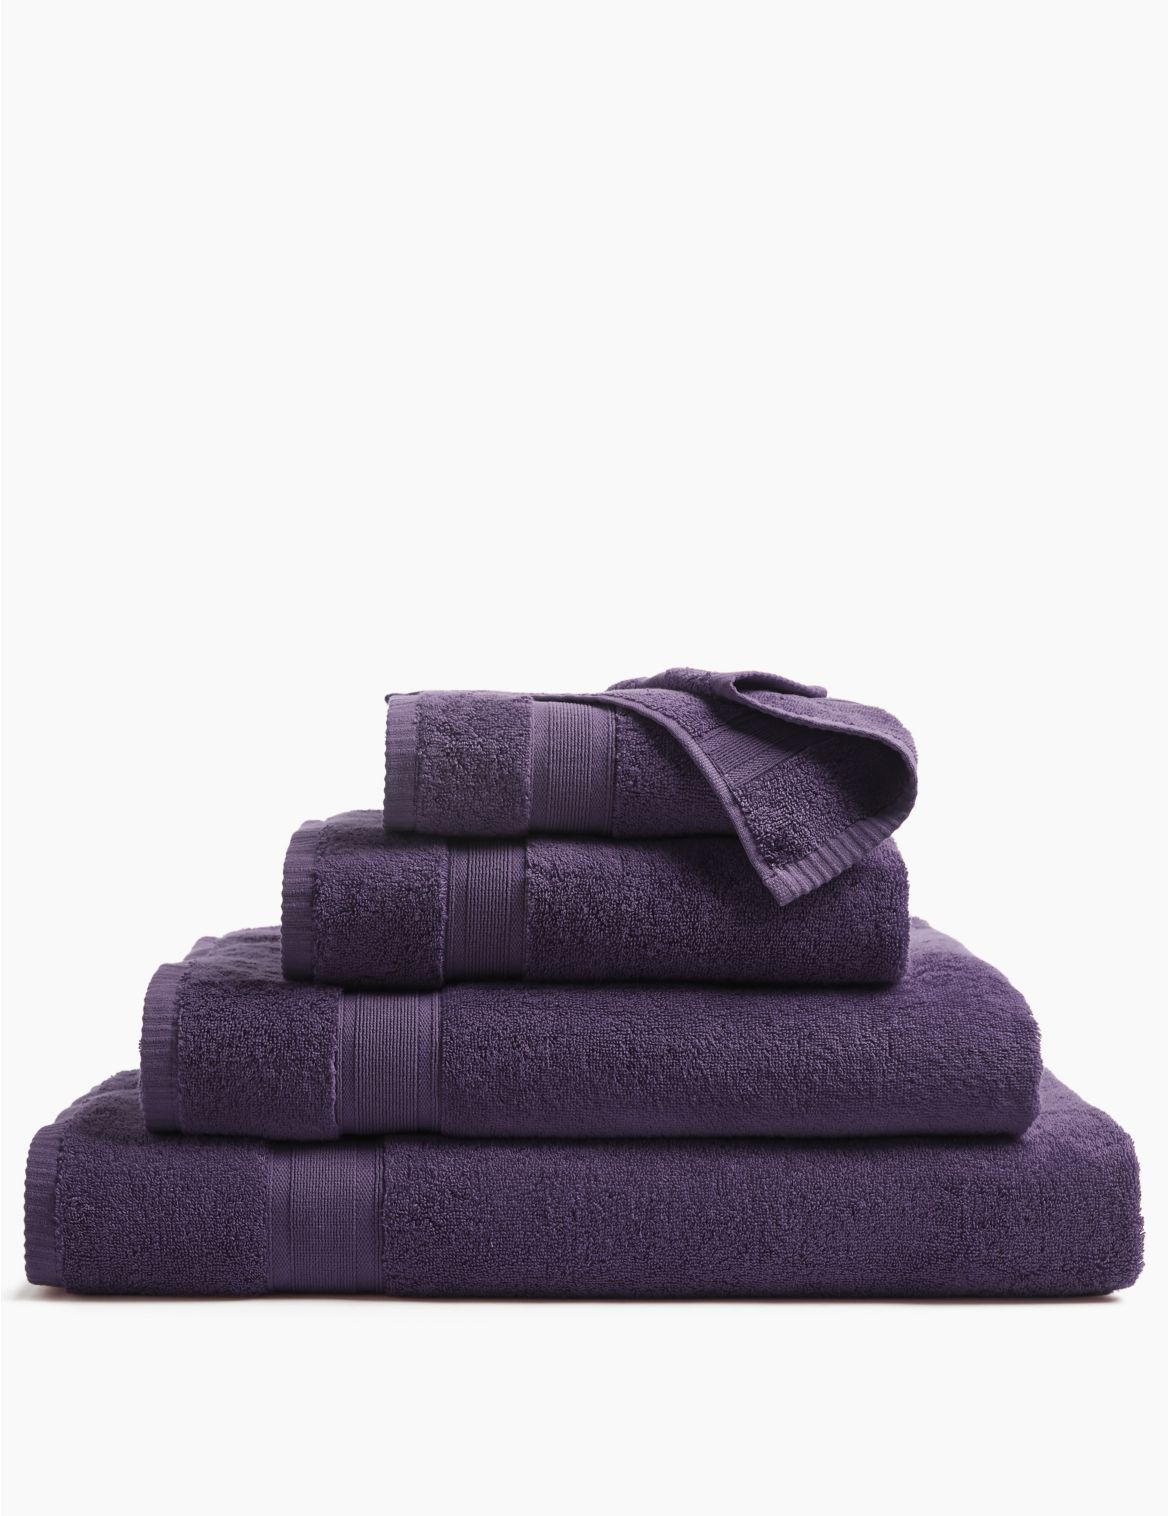 Super Soft Pure Cotton Towel purple